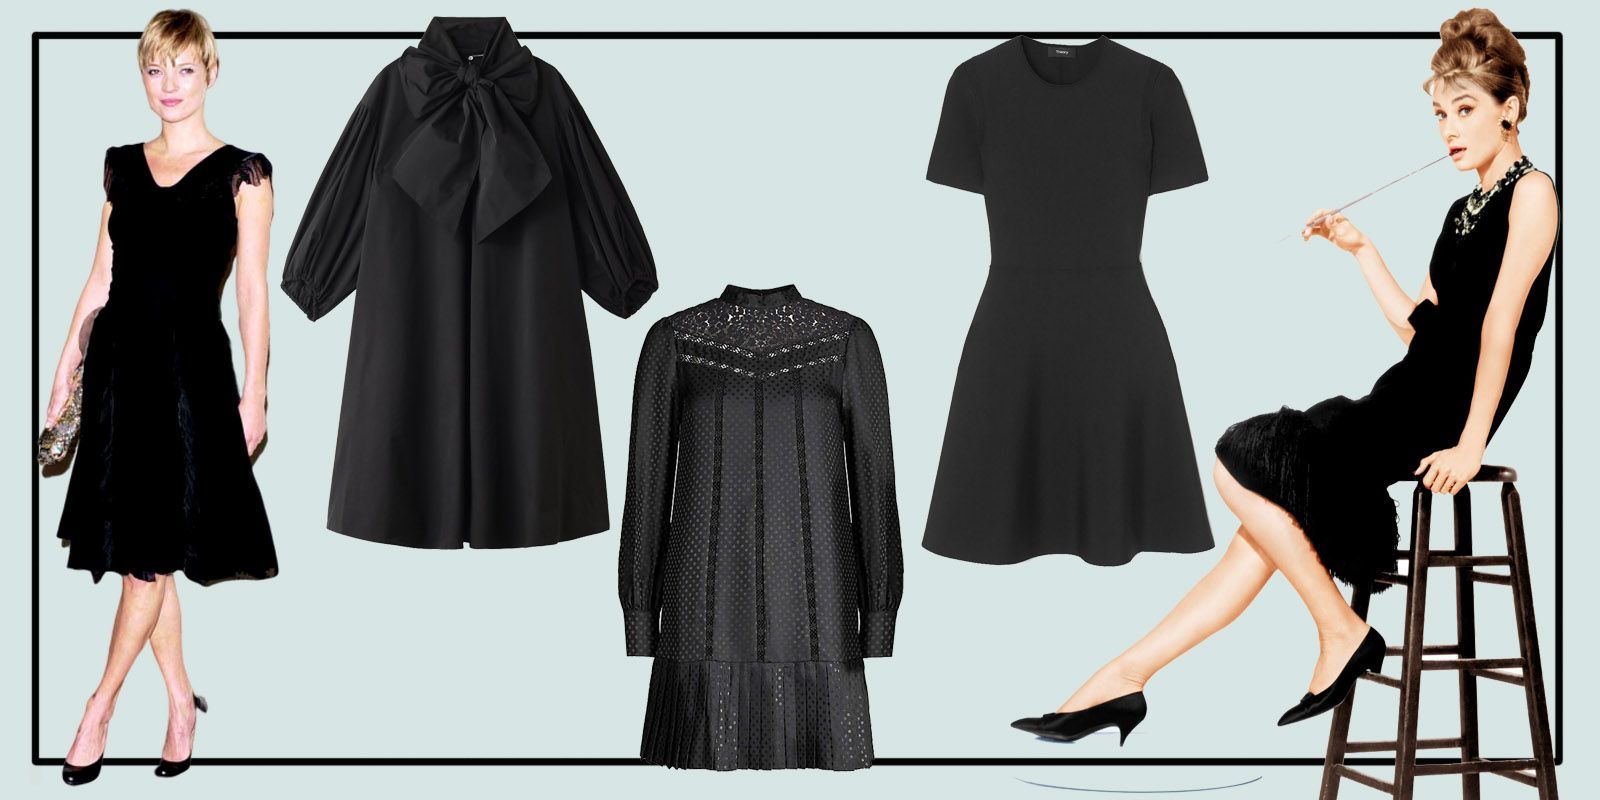 リトル・ブラック・ドレスこそ最強の美人服！ 頼れる黒ワンピースの